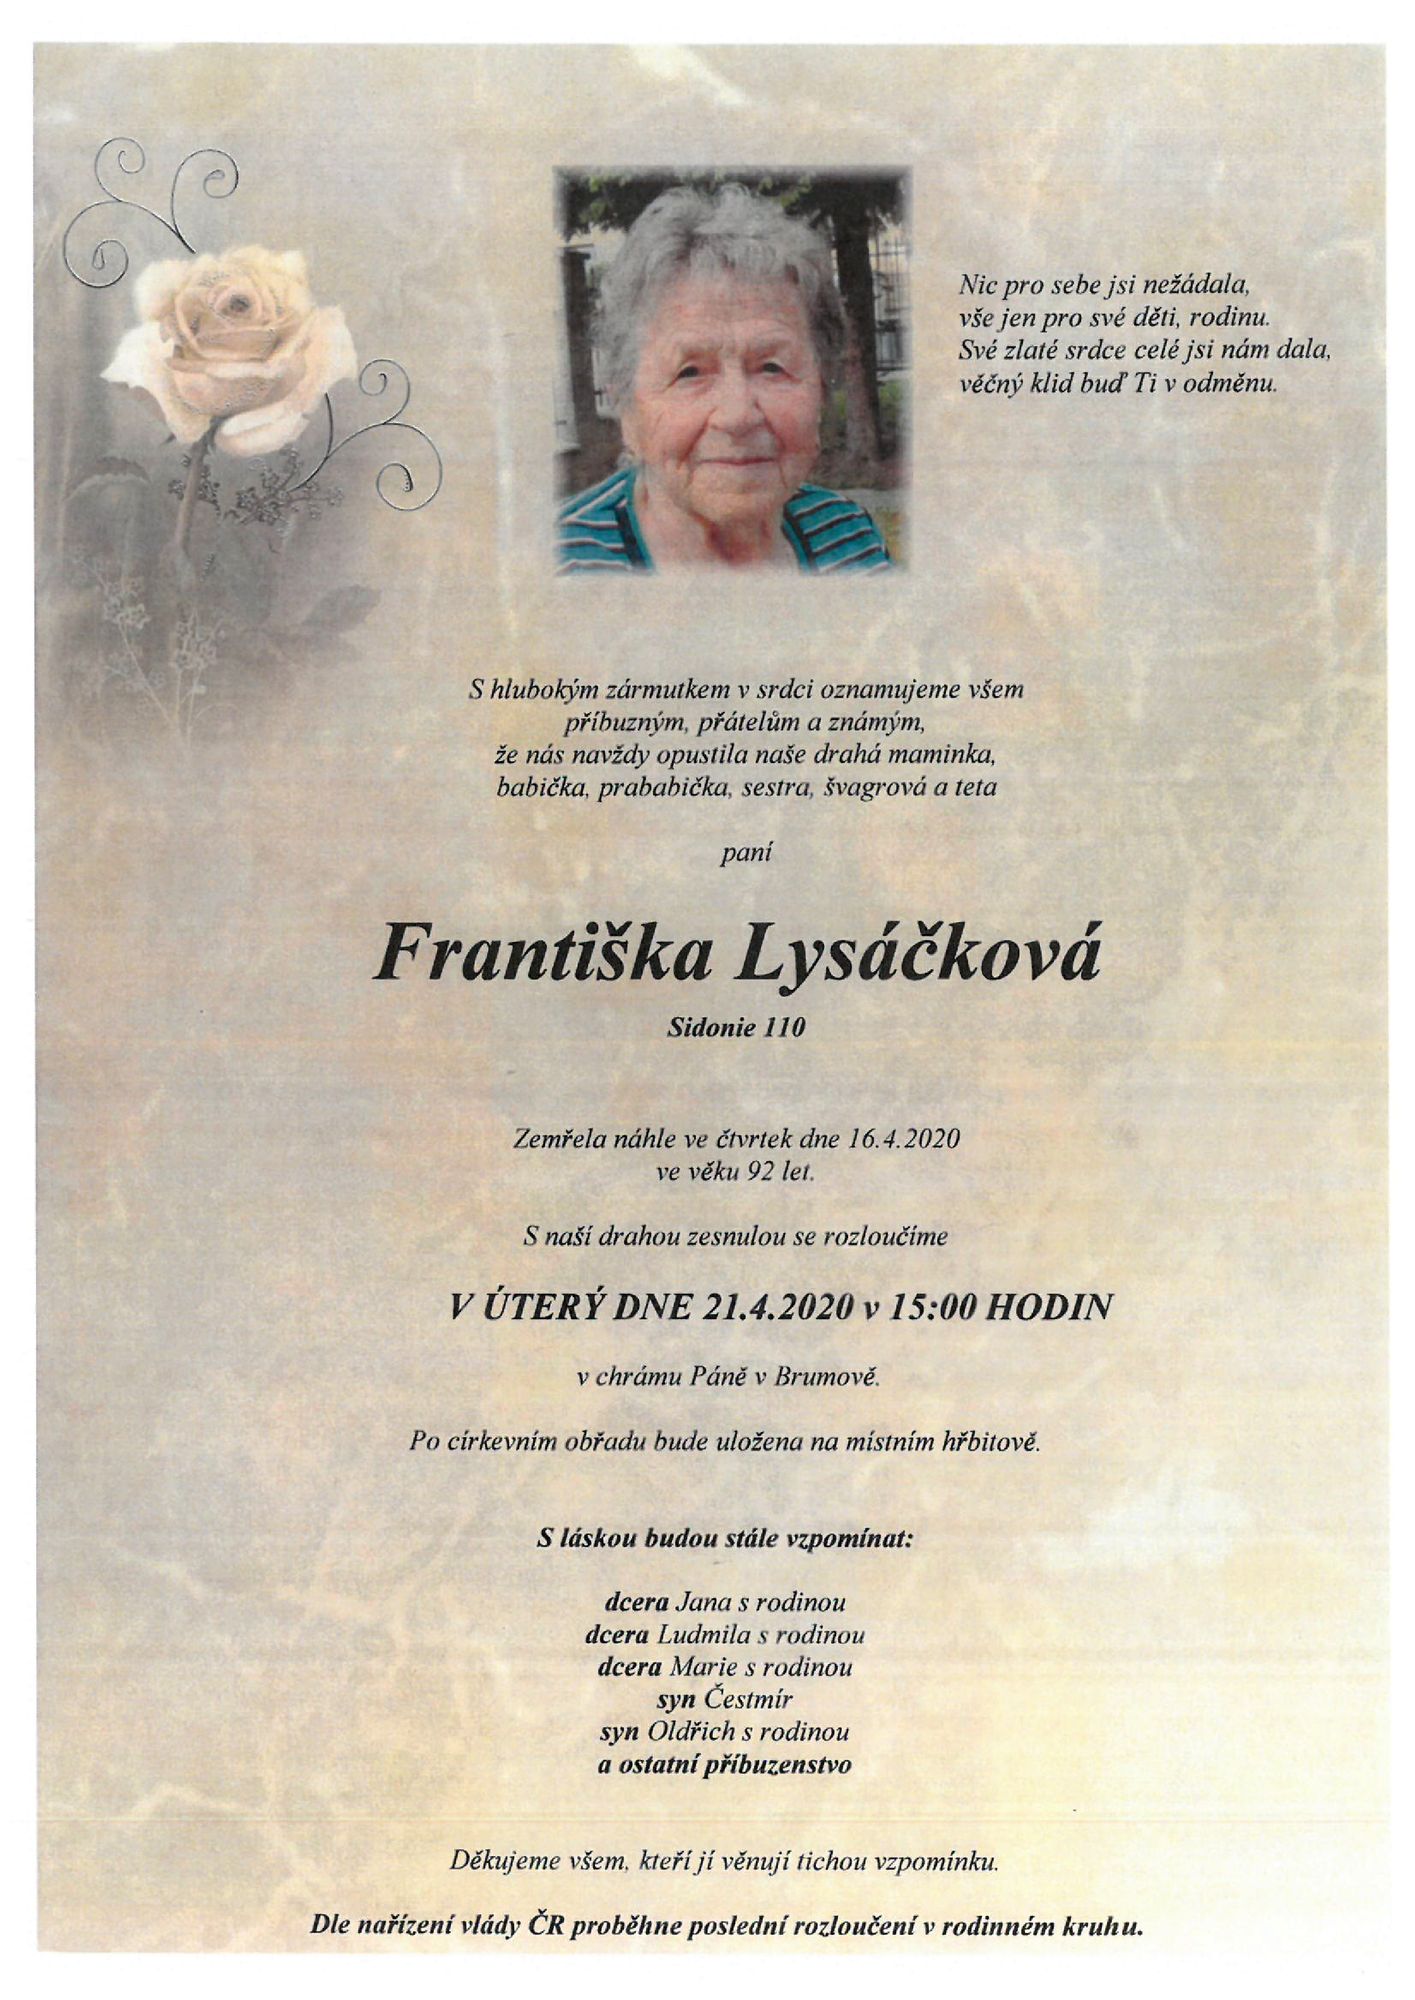 Františka Lysáčková